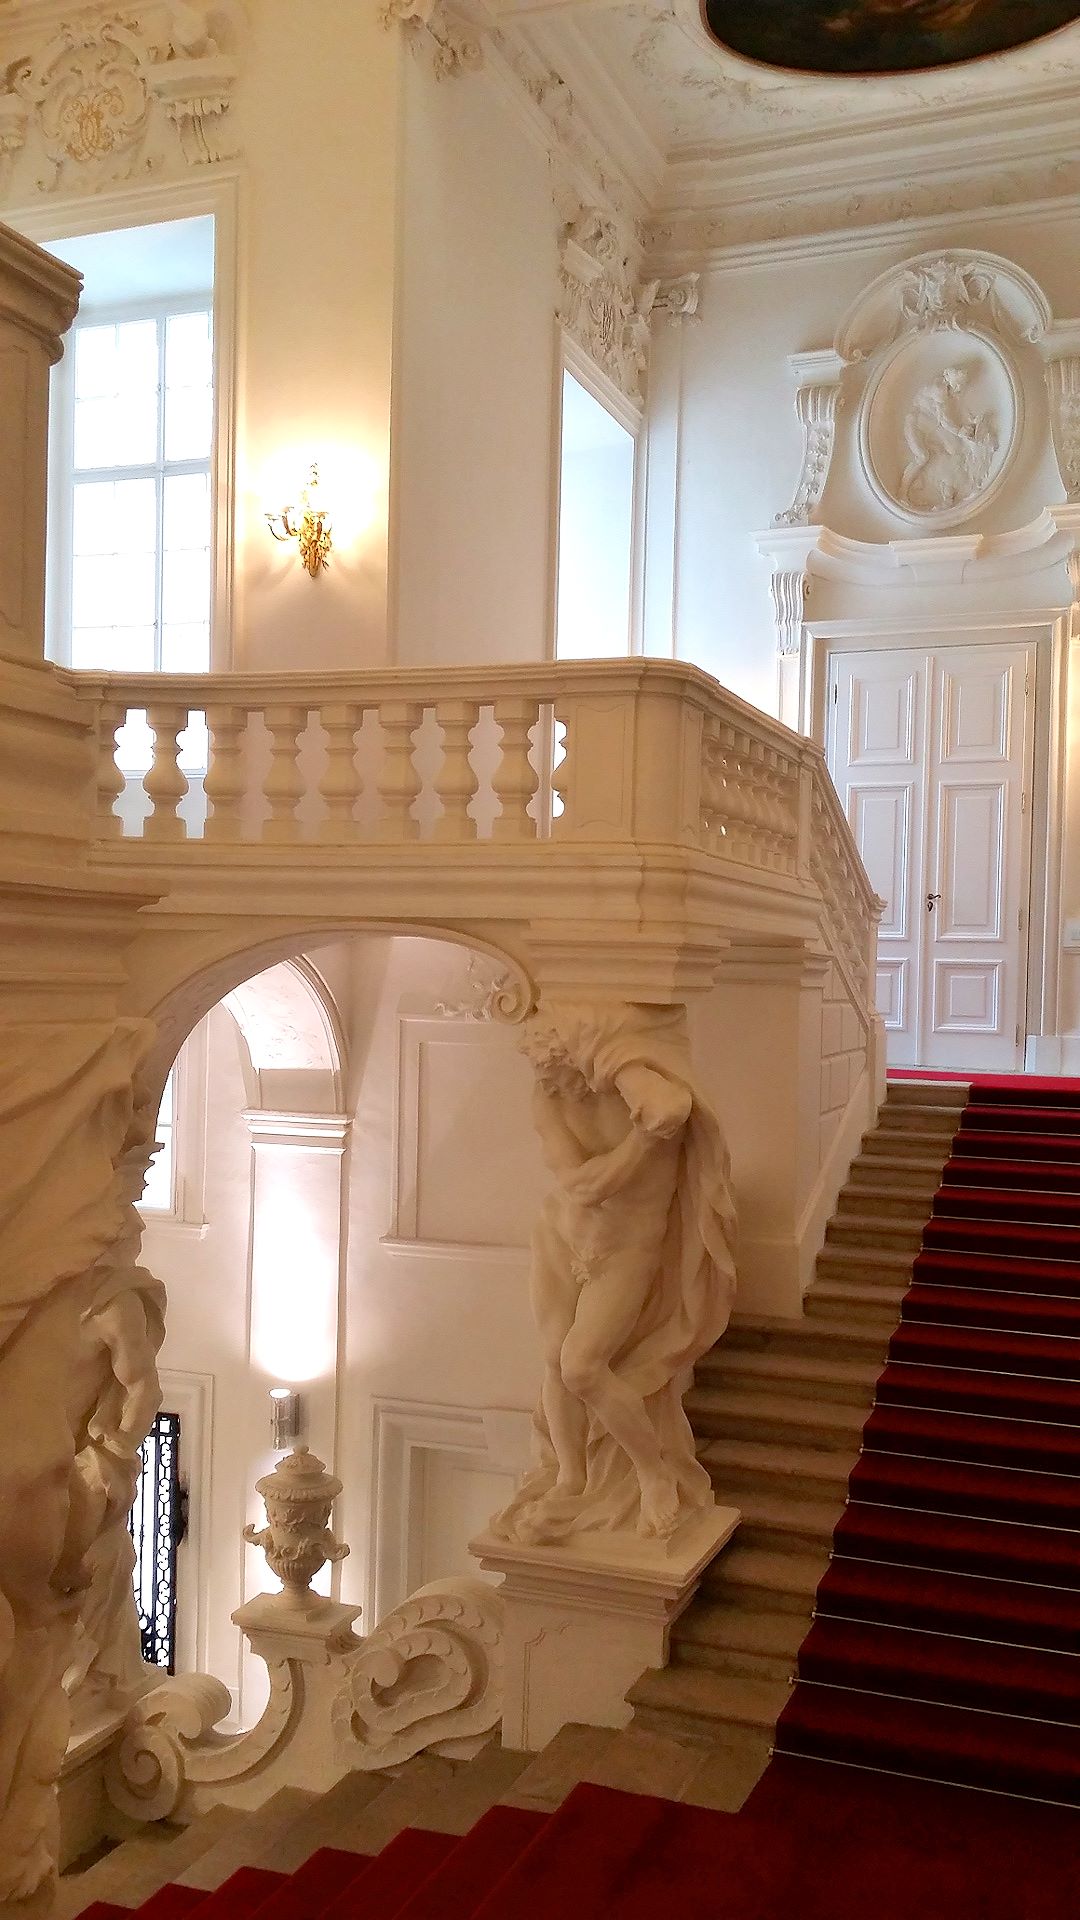 Prunkstiegenhaus in die Reprästentationsräume des Stadtpalais von Prinz Eugen